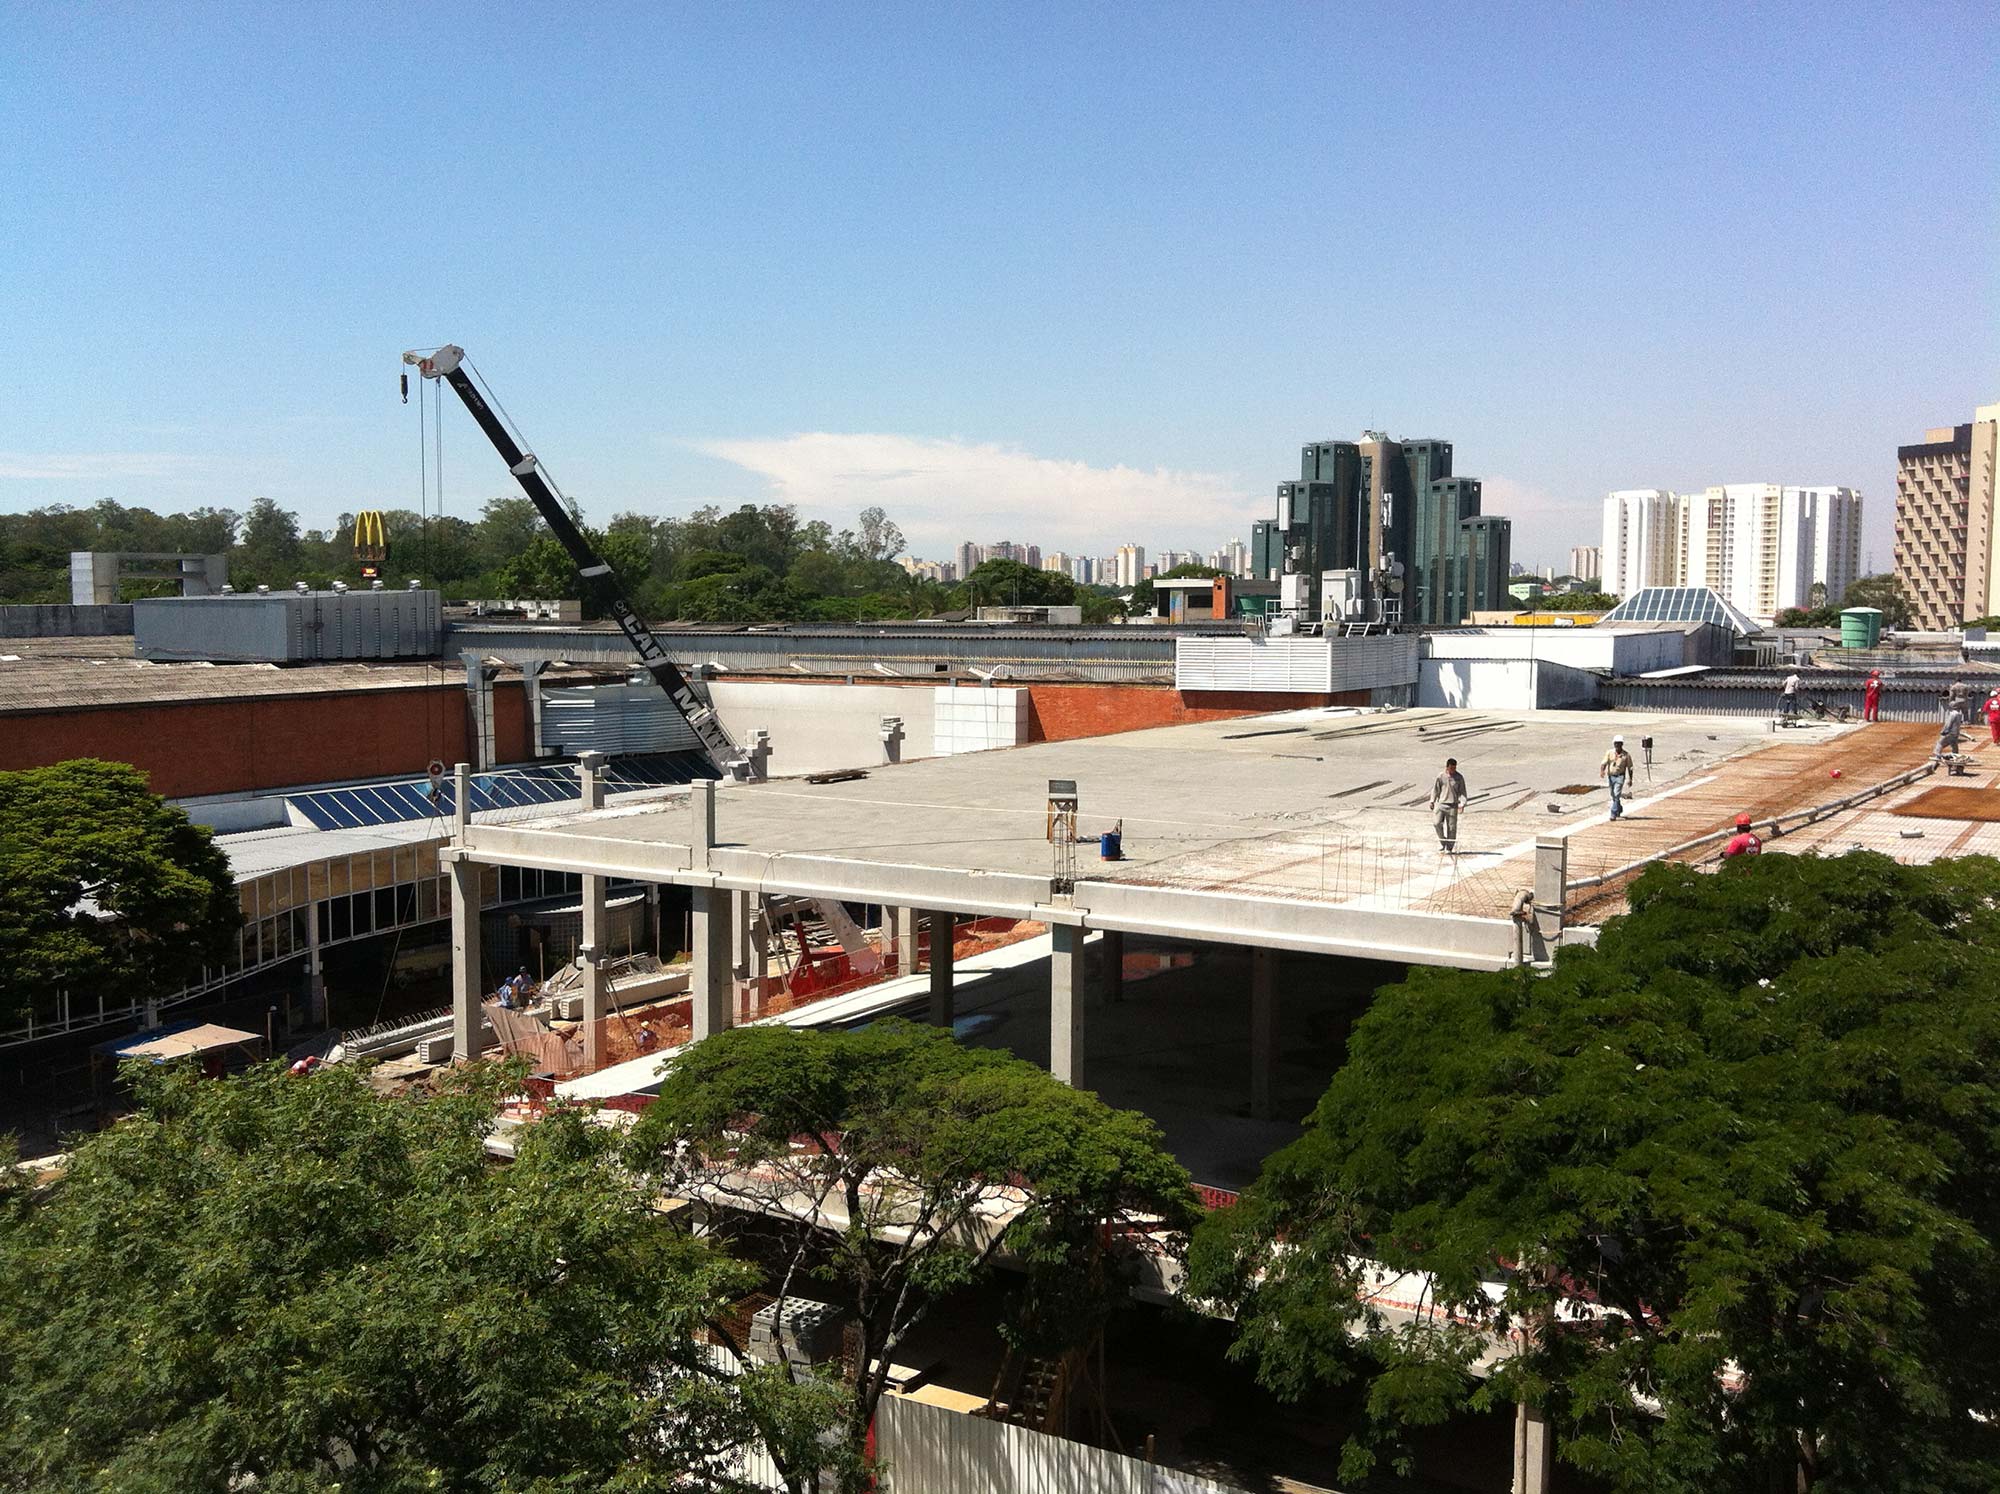 Shopping Center Vale – Expansão Lojas / Deck Park / Praça de Alimentação